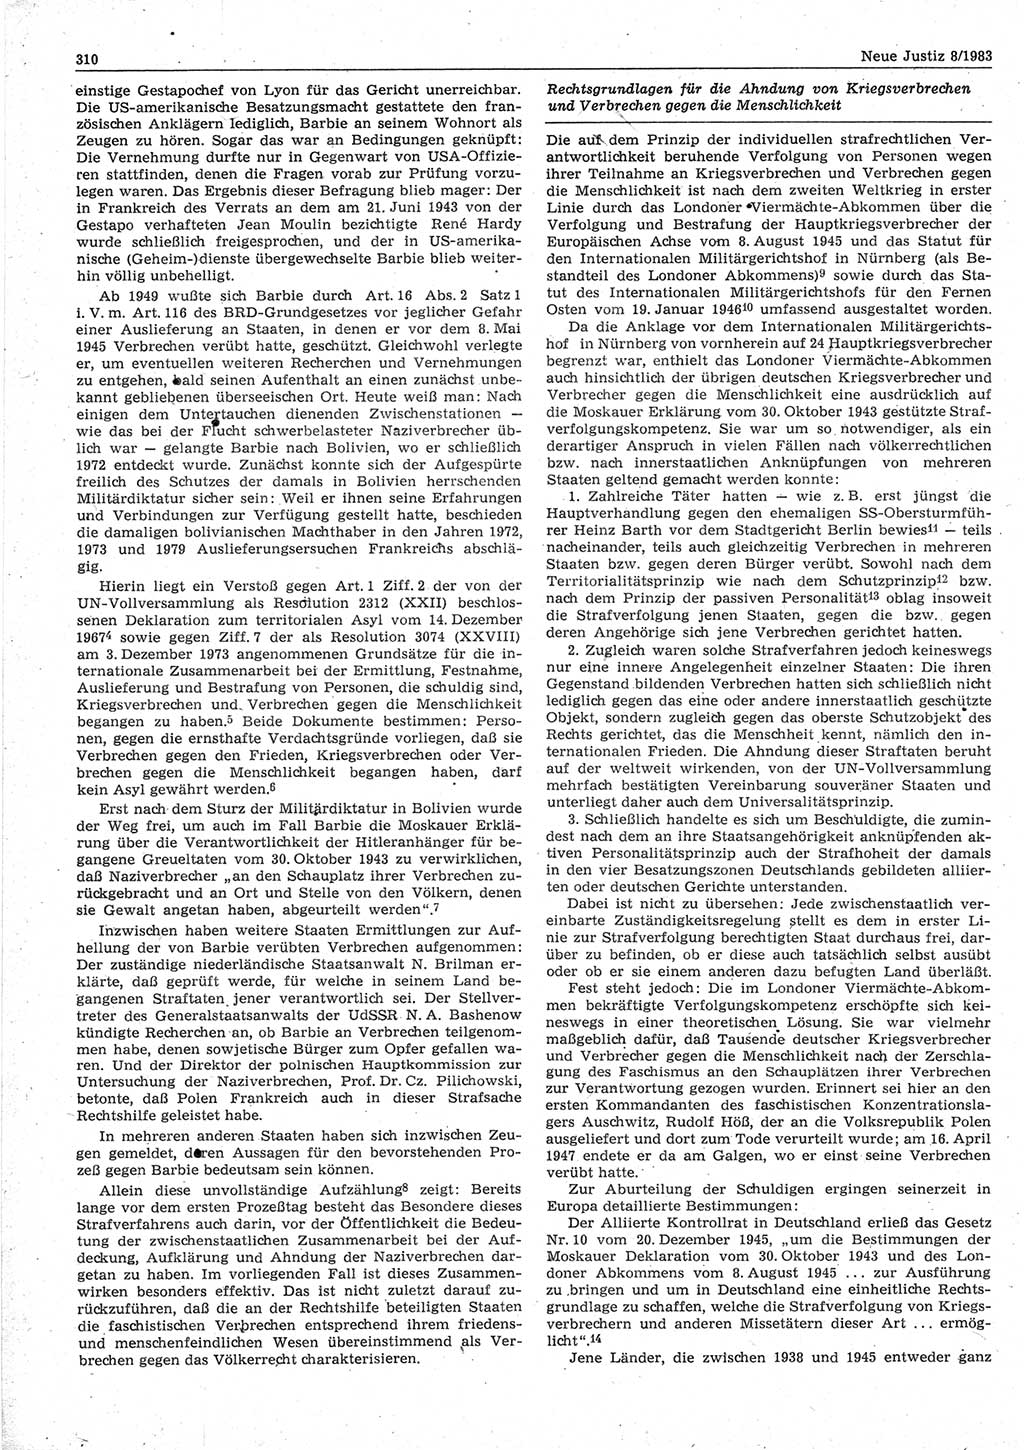 Neue Justiz (NJ), Zeitschrift für sozialistisches Recht und Gesetzlichkeit [Deutsche Demokratische Republik (DDR)], 37. Jahrgang 1983, Seite 310 (NJ DDR 1983, S. 310)